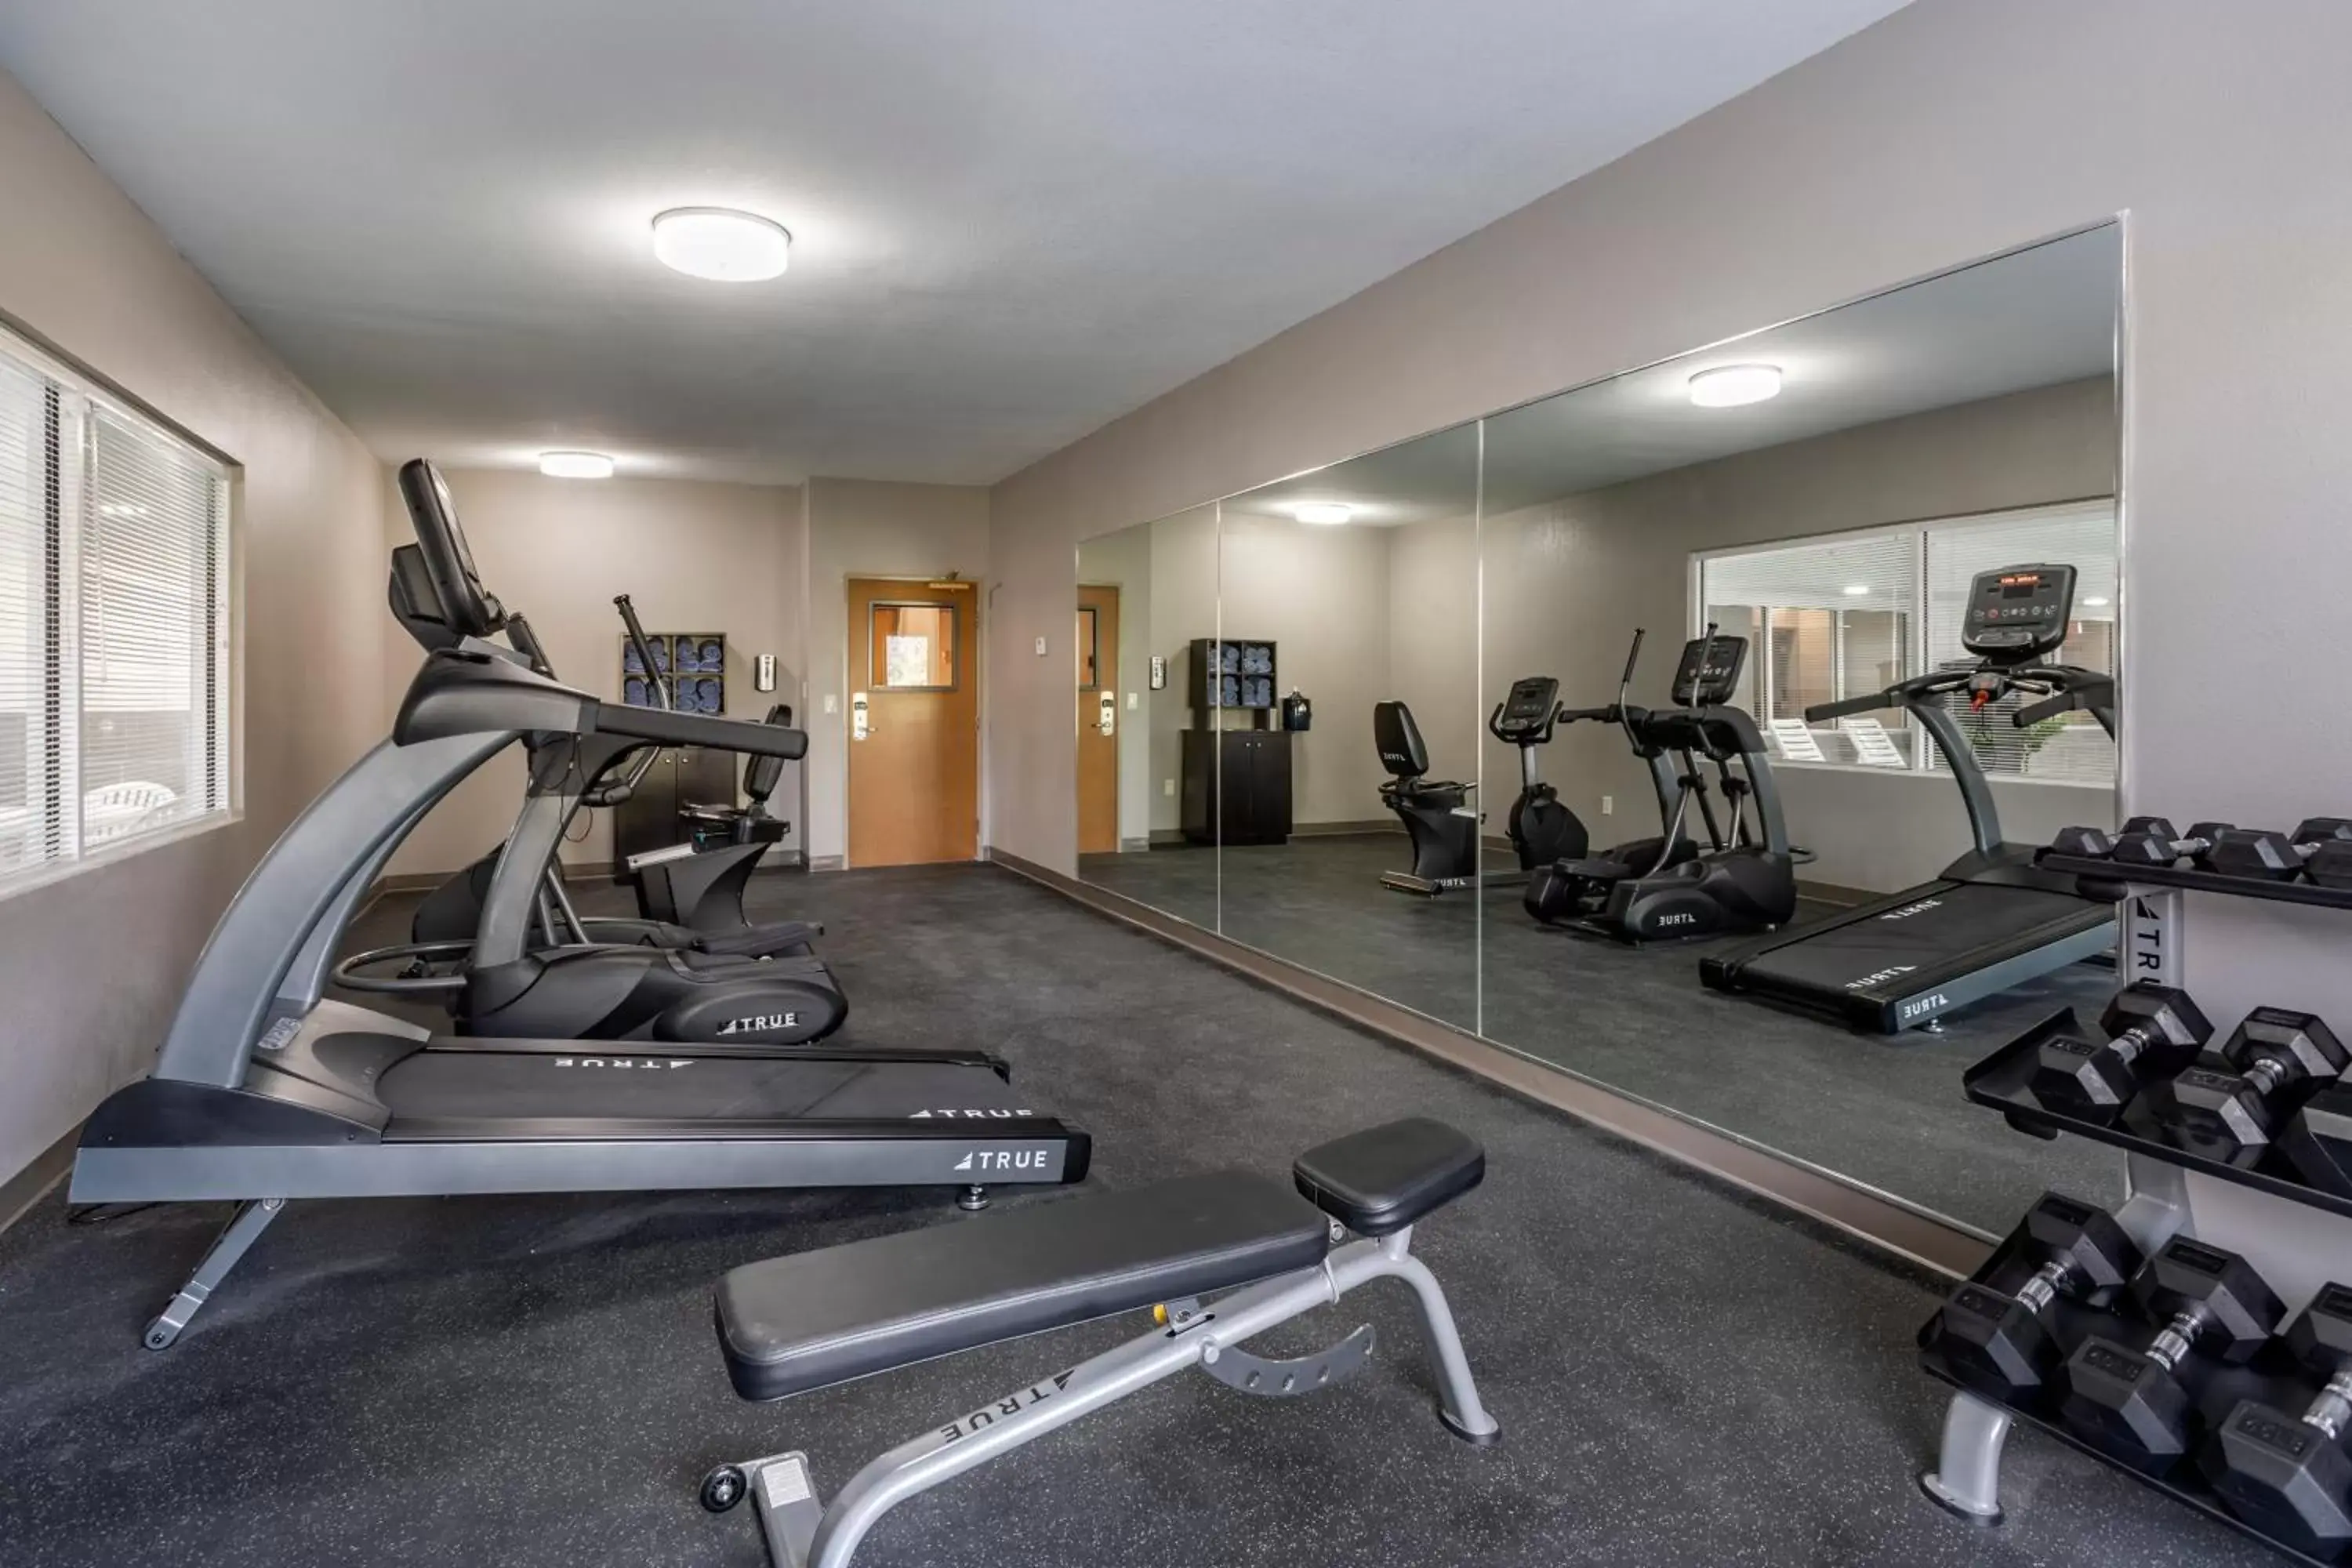 Fitness centre/facilities, Fitness Center/Facilities in Sleep Inn & Suites Lebanon - Nashville Area